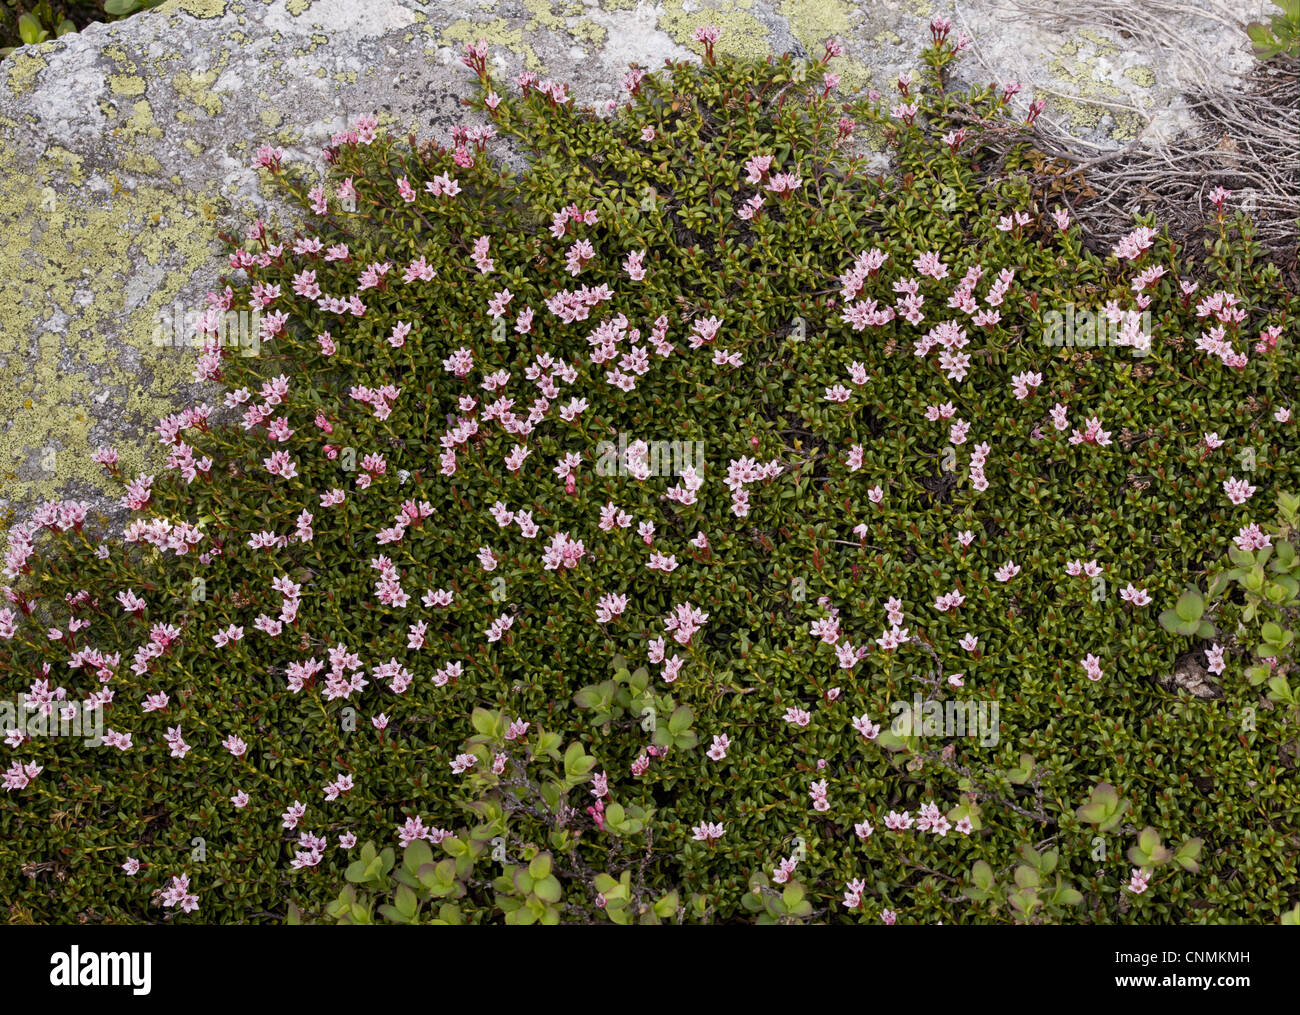 Azalée (Loiseleuria procumbens) floraison, croissant sur des roches granitiques acides, Alpes Suisses, Suisse, juin Banque D'Images